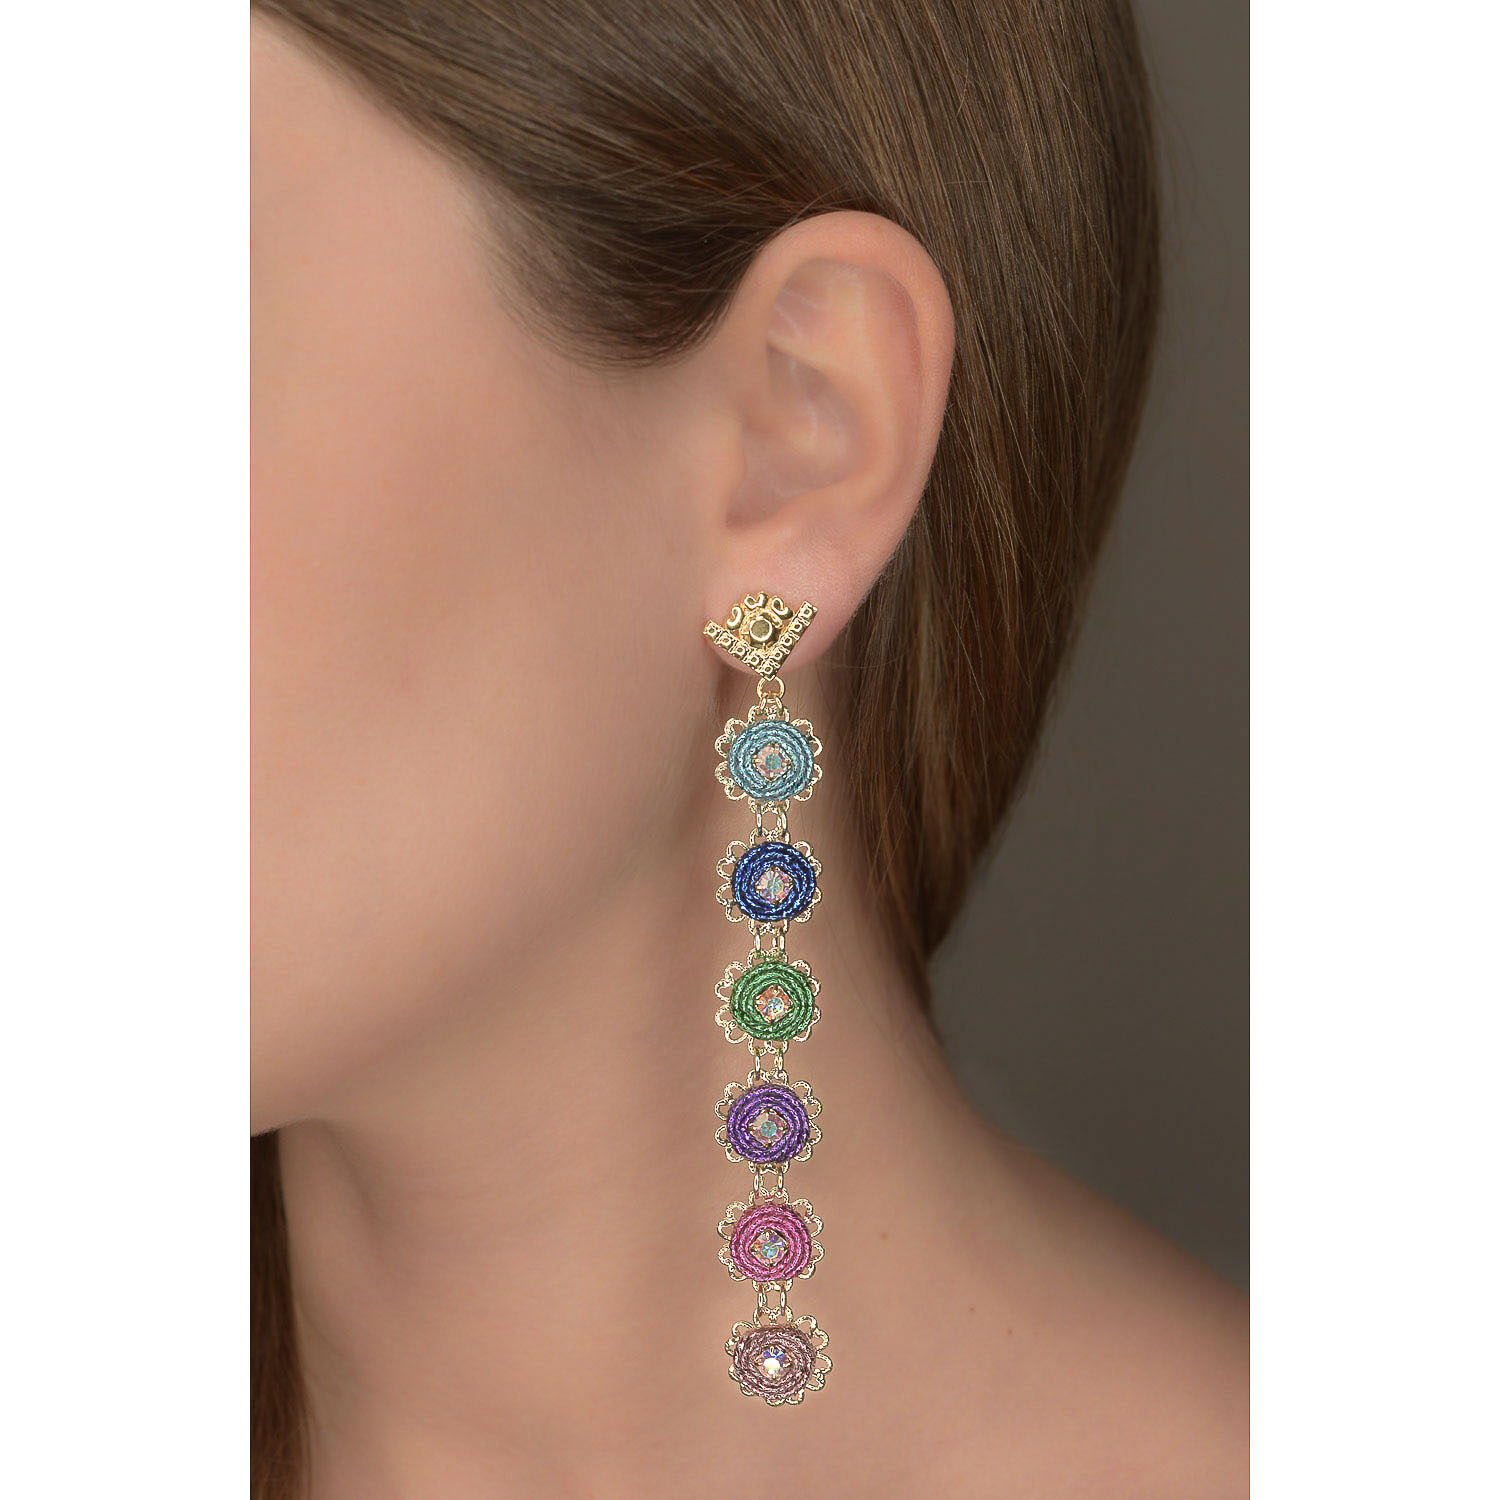 Orecchini pendenti lunghi piccoli e leggeri con cerchi in tessuto lurex multicolore e decorazioni in cristalli swarovski